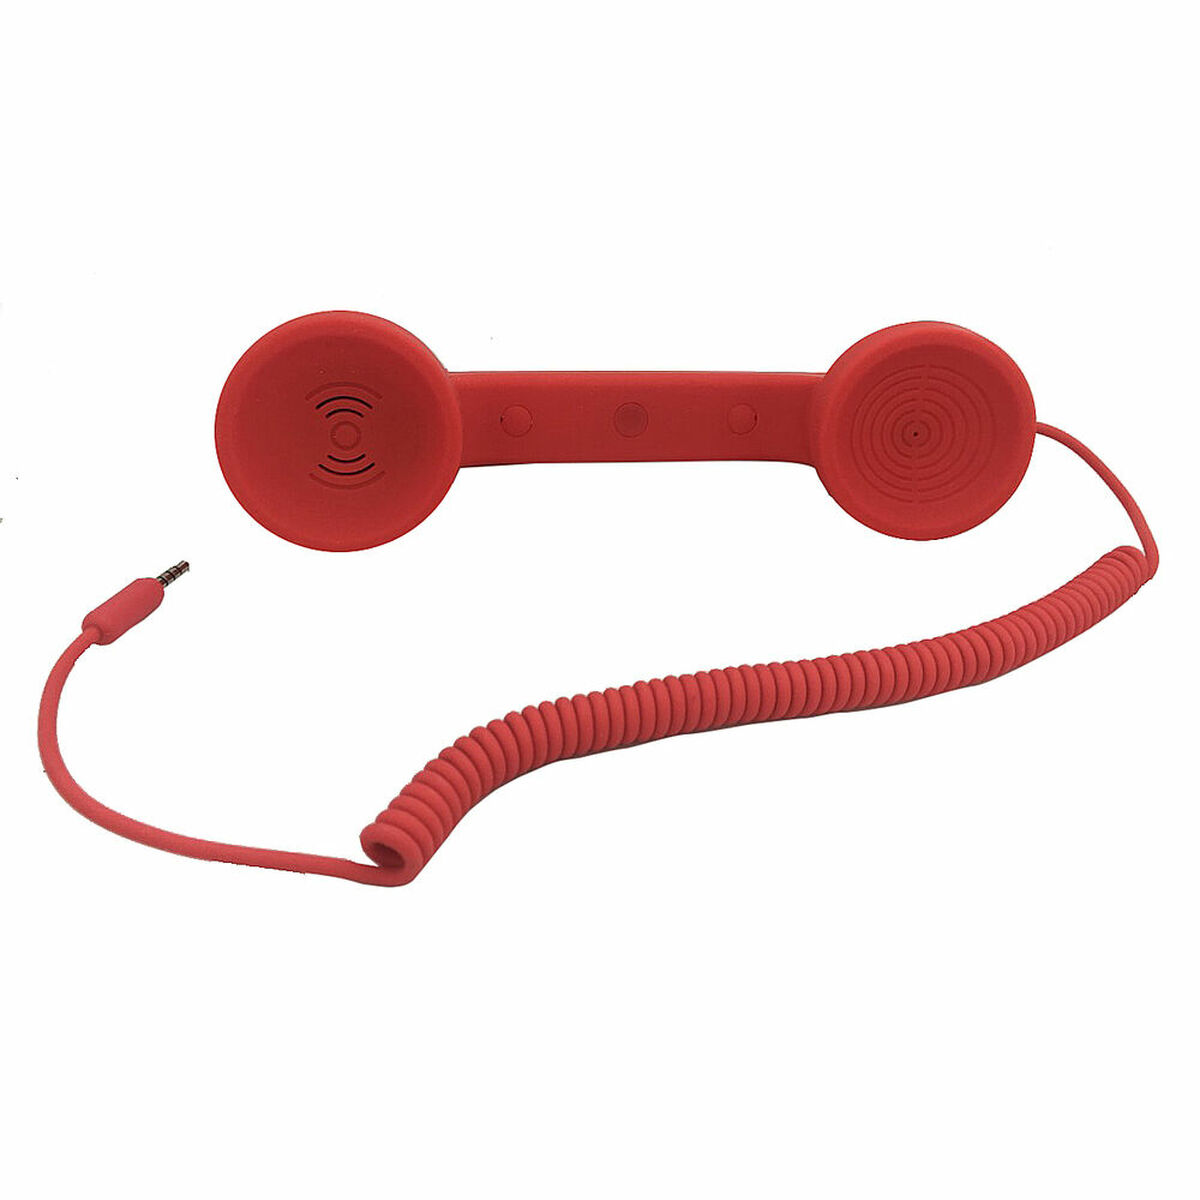 Headphones Kyboe KYHS-008-RED Red